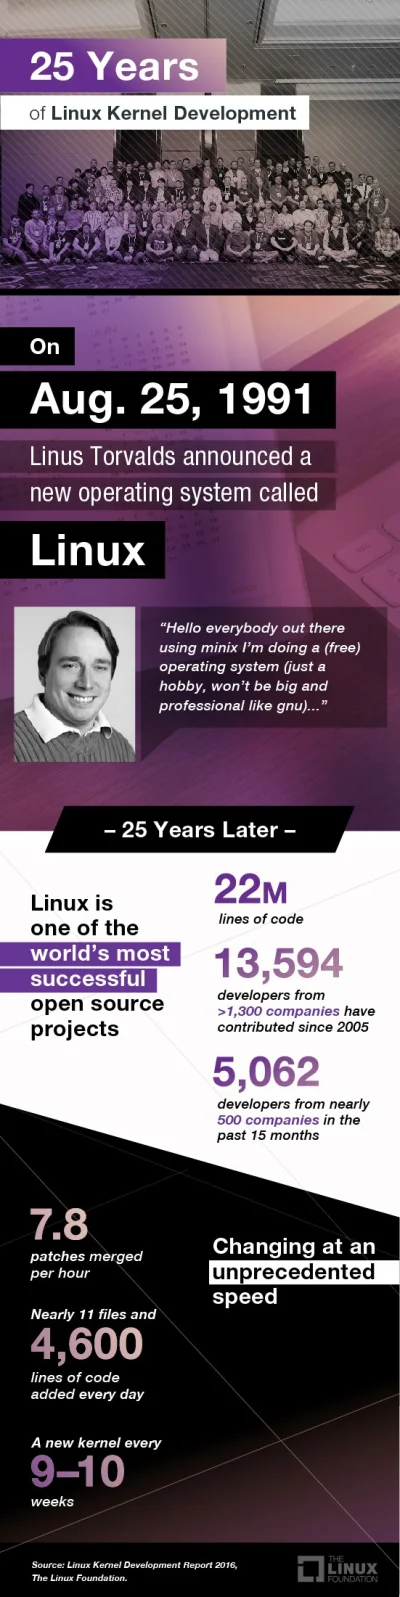 webh - Wszystkiego najlepszego z okazji 25 urodzin, #linux !

SPOILER